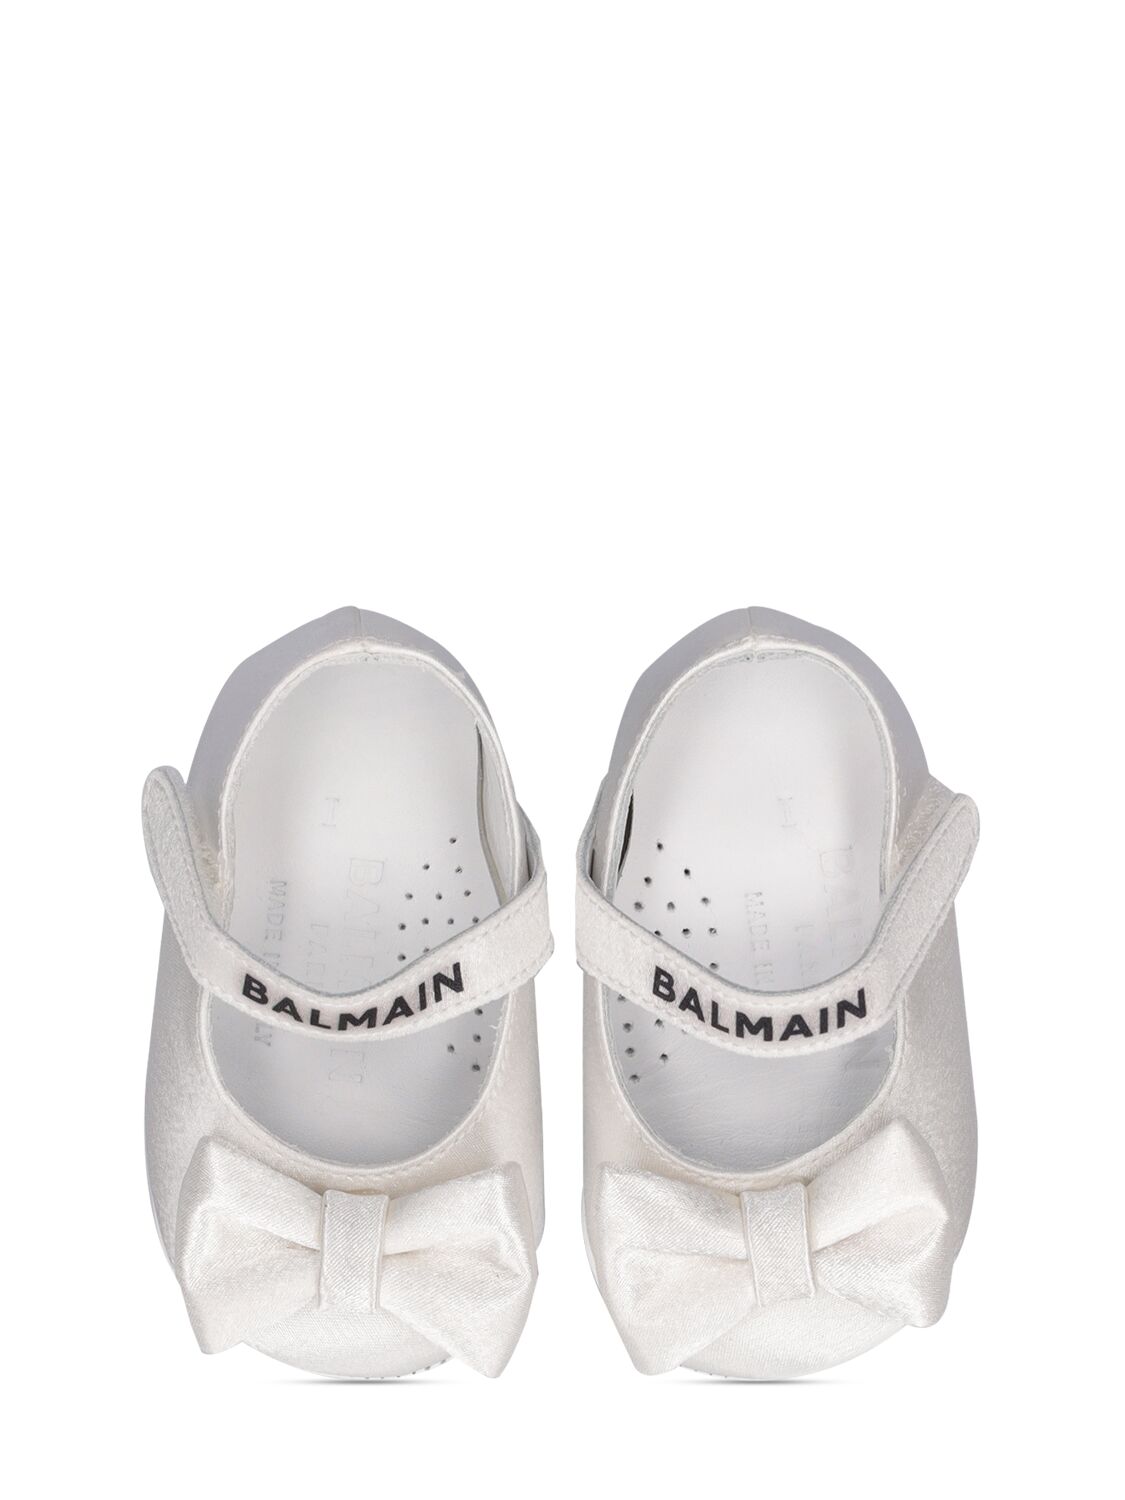 Shop Balmain Satin Ballerina Flats In White